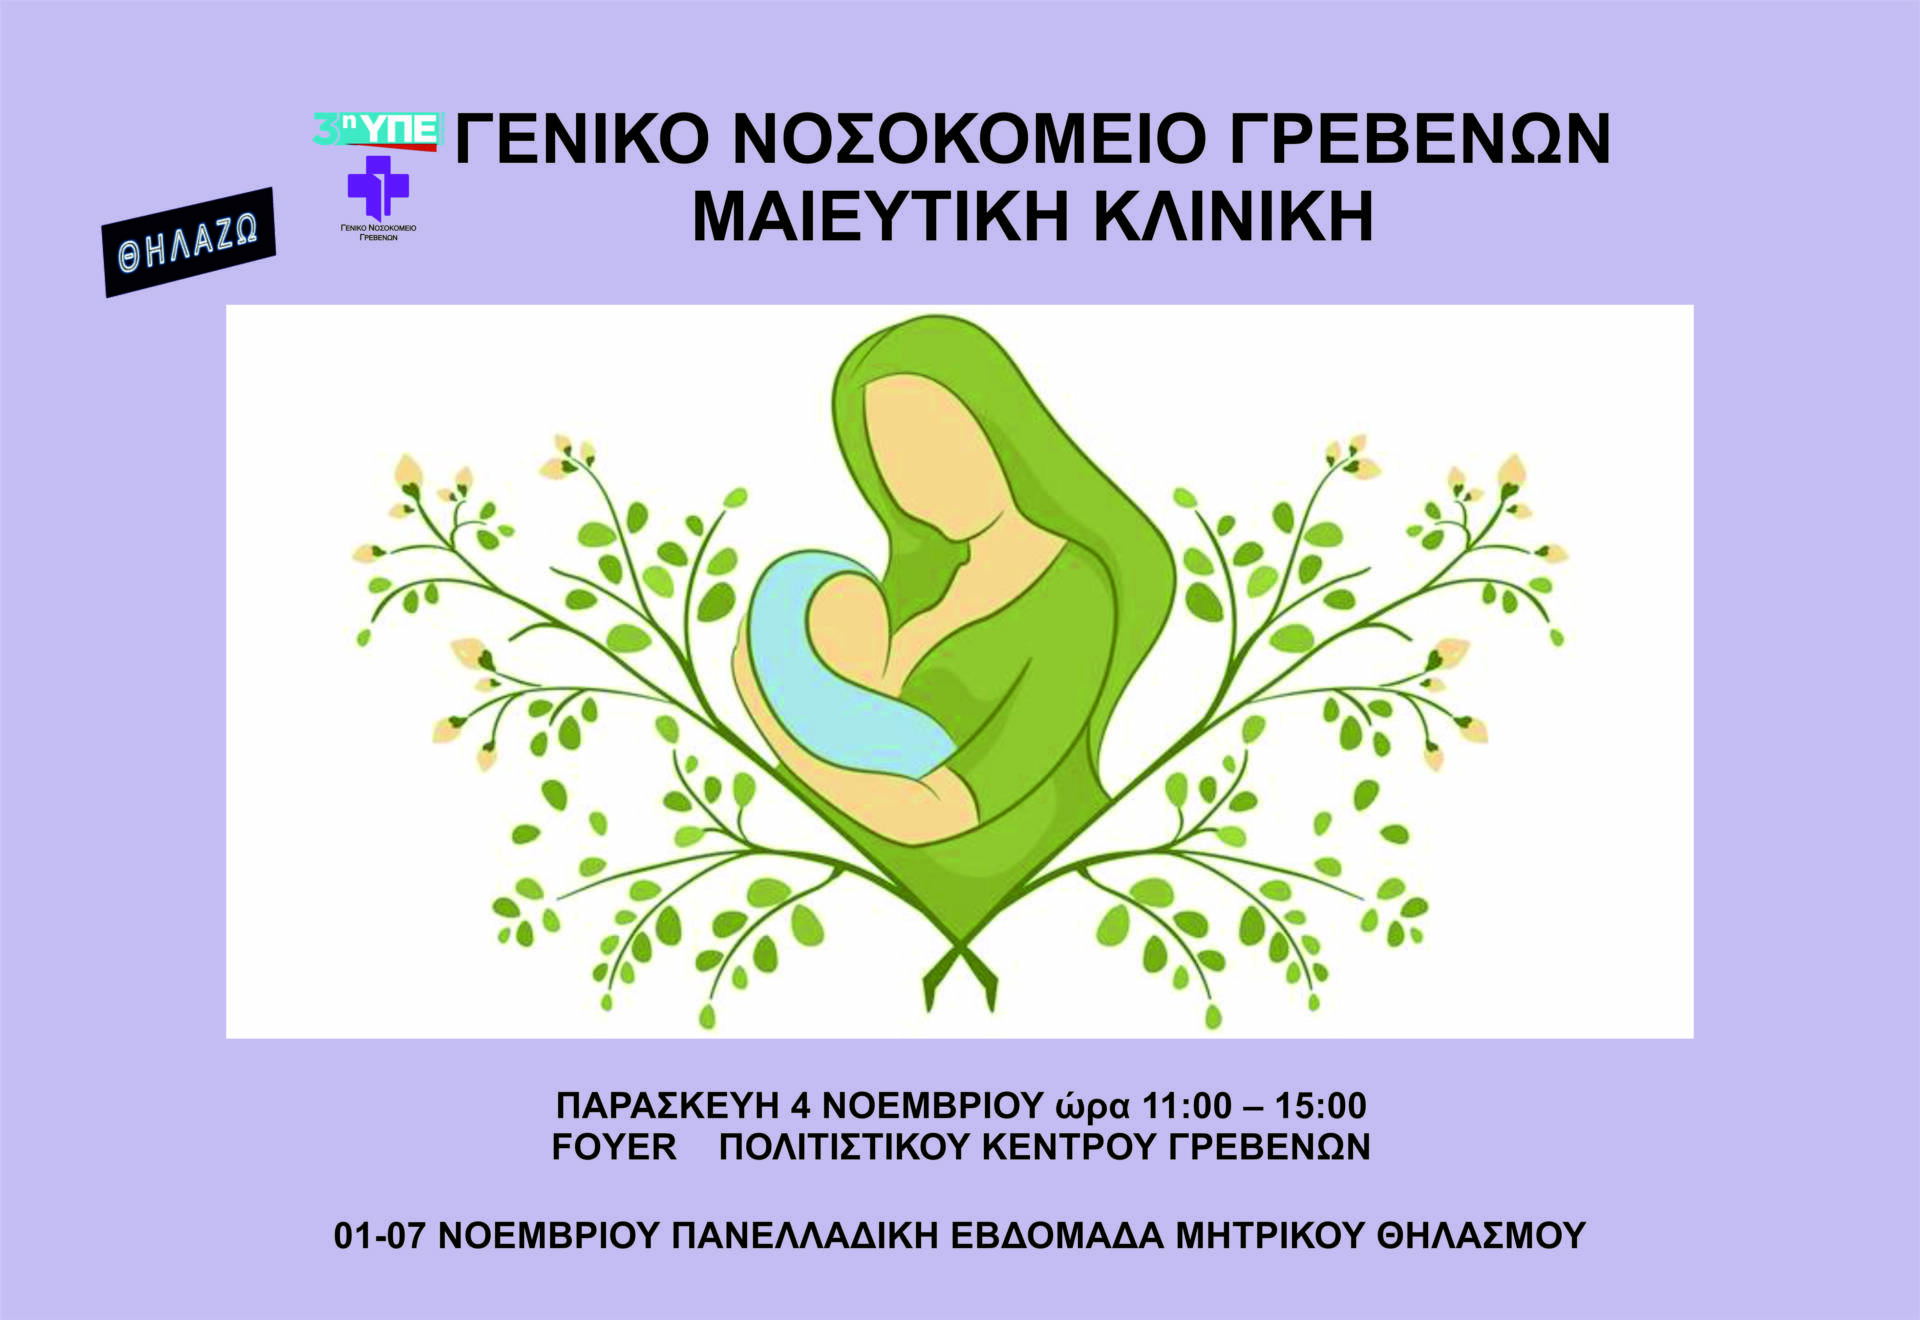 Πανελλαδική Εβδομάδα Μητρικού Θηλασμού από 1 έως 7 Νοεμβρίου στο Φουαγέ του Πολιτιστικού Κέντρου Γρεβενών